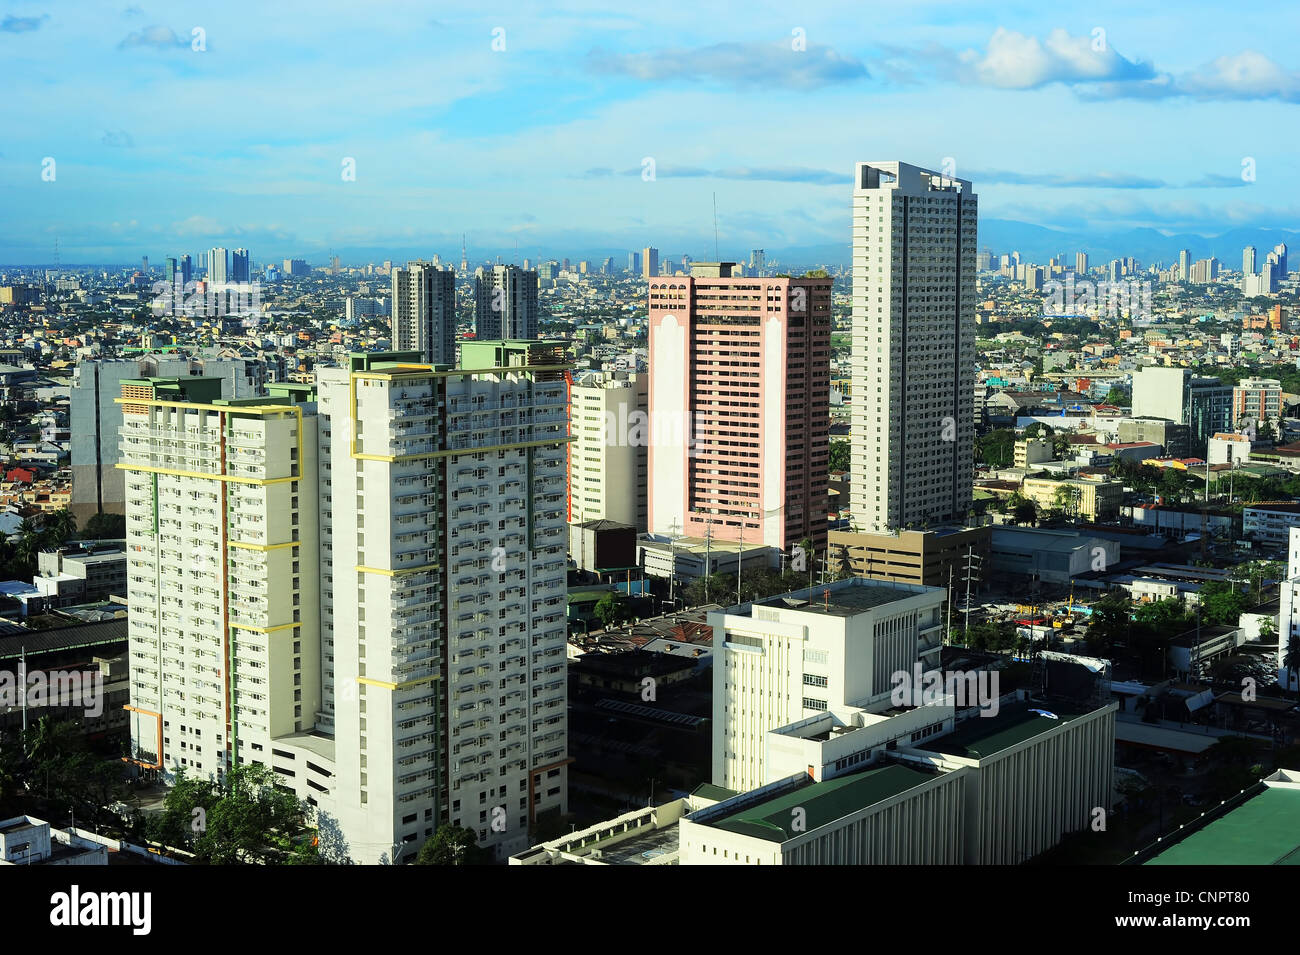 Luftbild auf Makati - modernen Finanz- und Geschäftsviertel von Metro Manila, Philippinen Stockfoto